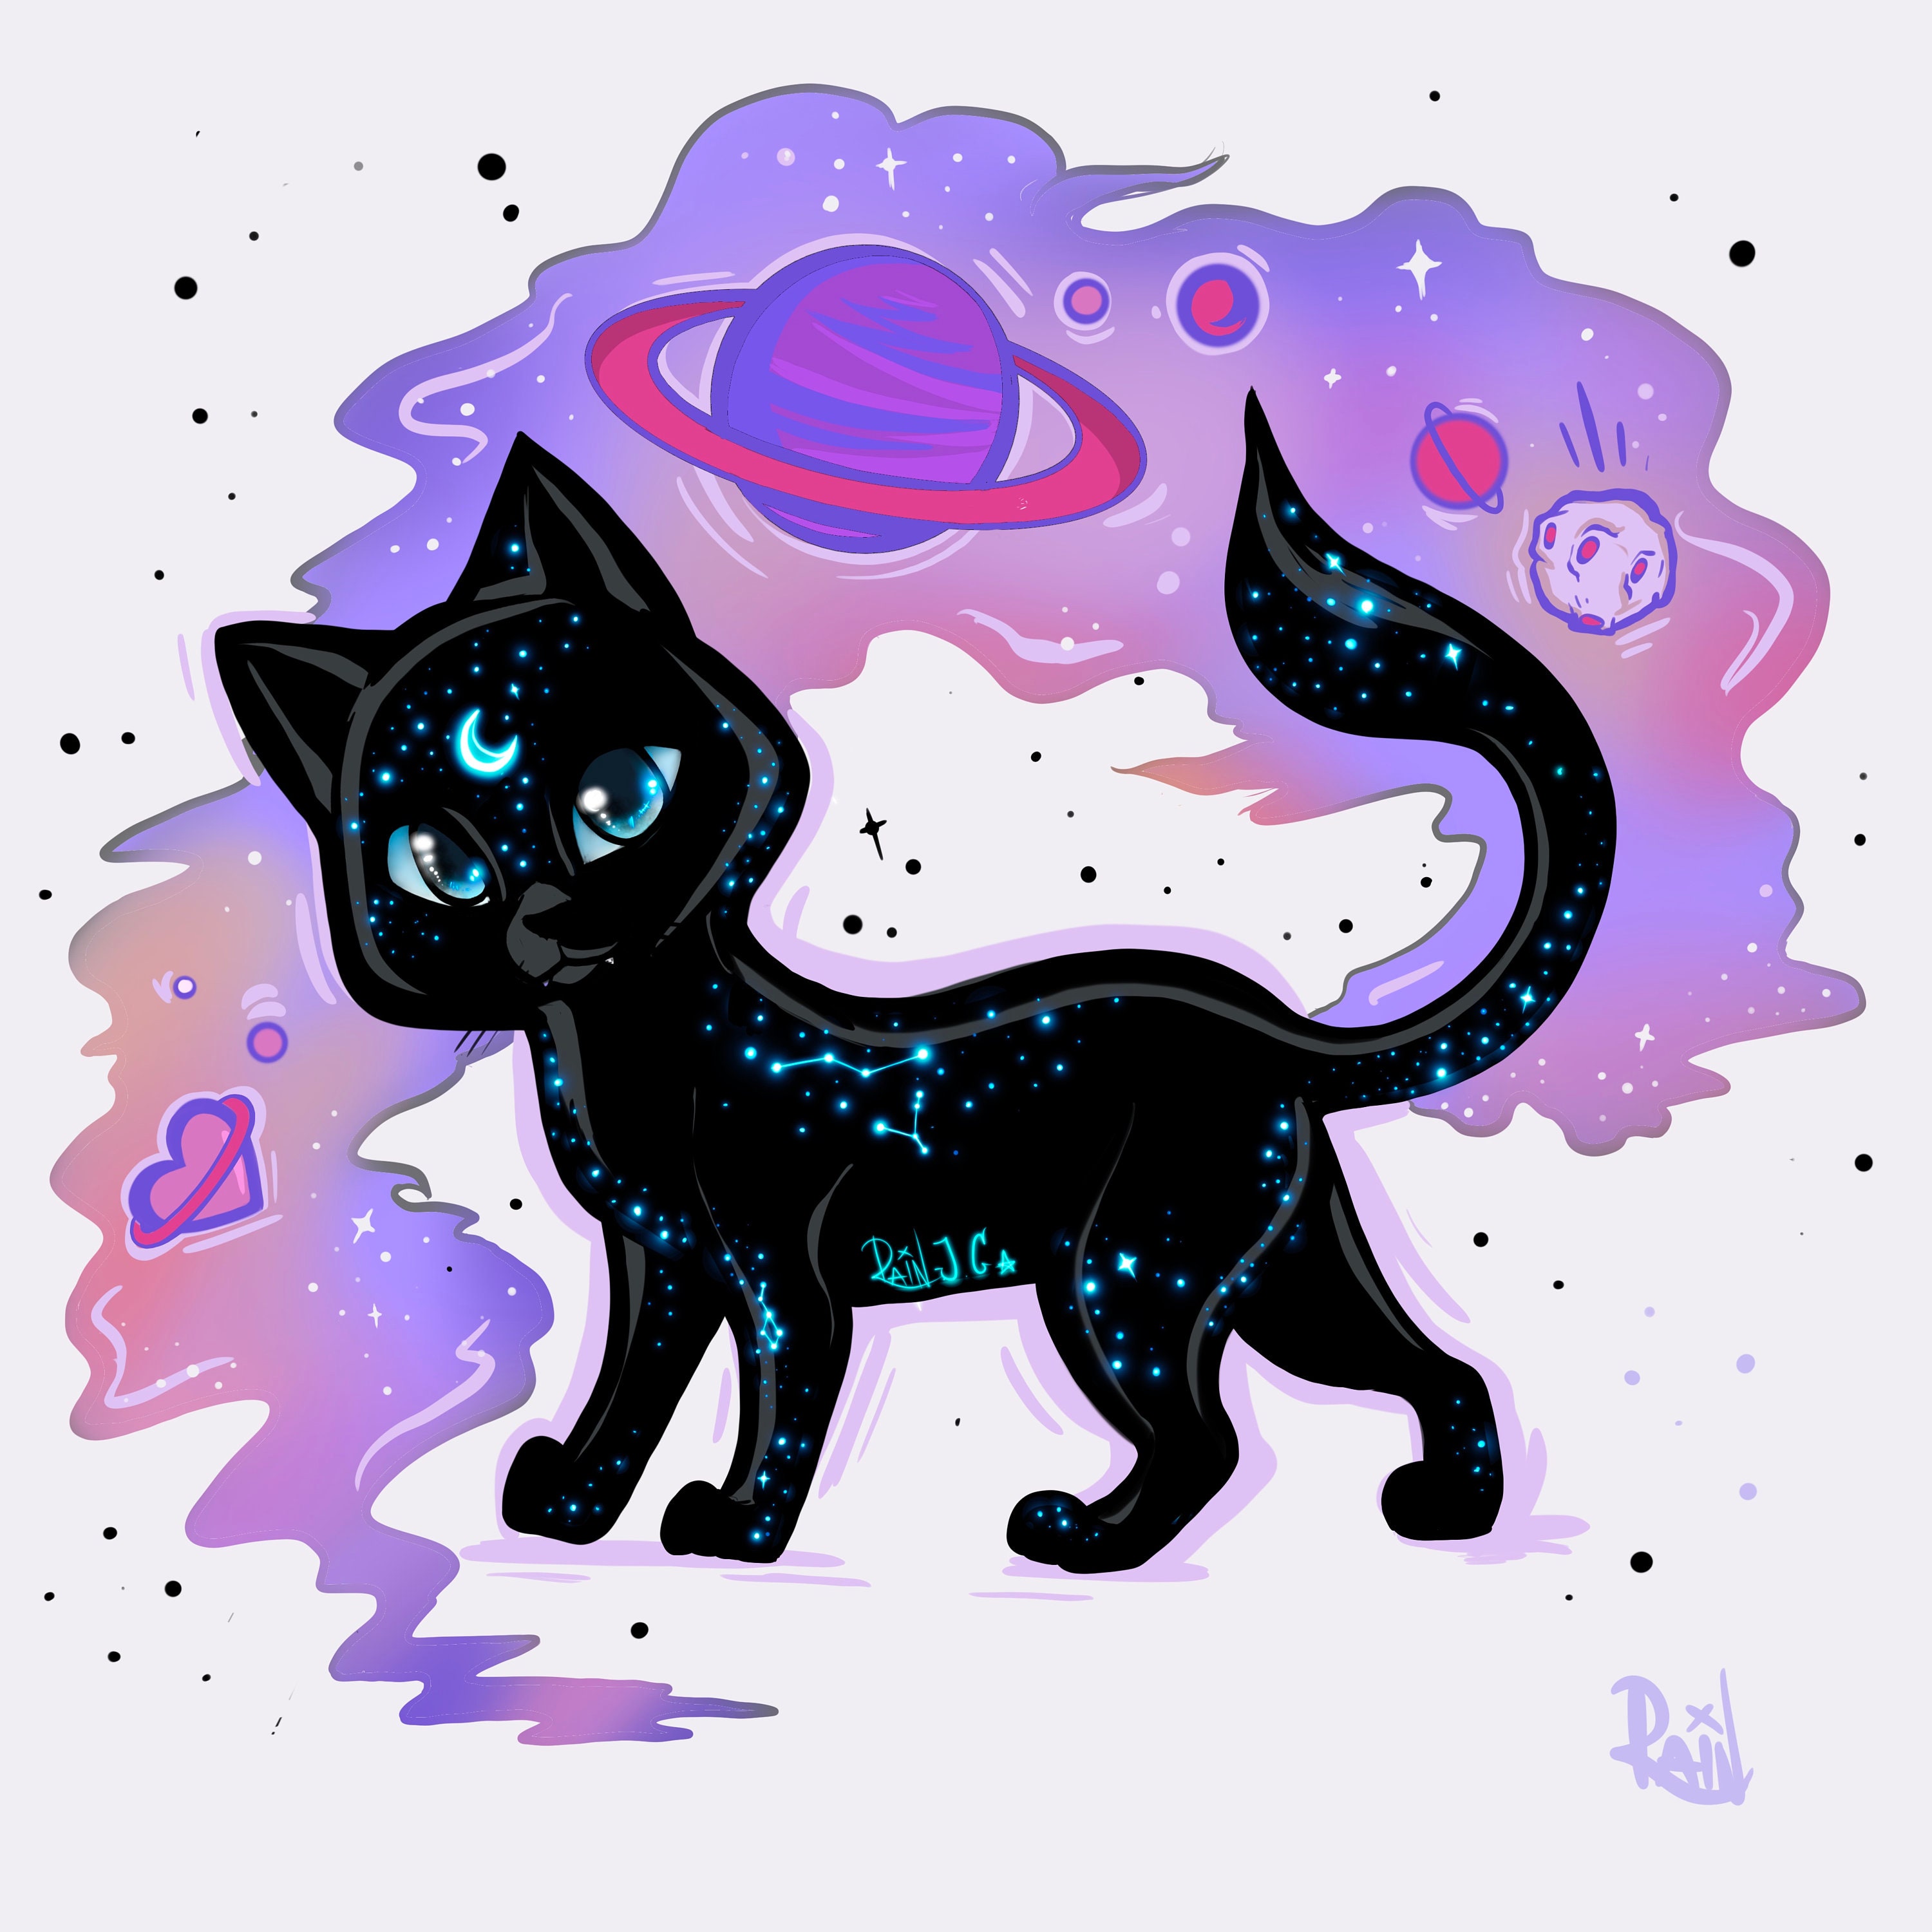 galaxy cat by xXxGoatMumxXx on DeviantArt